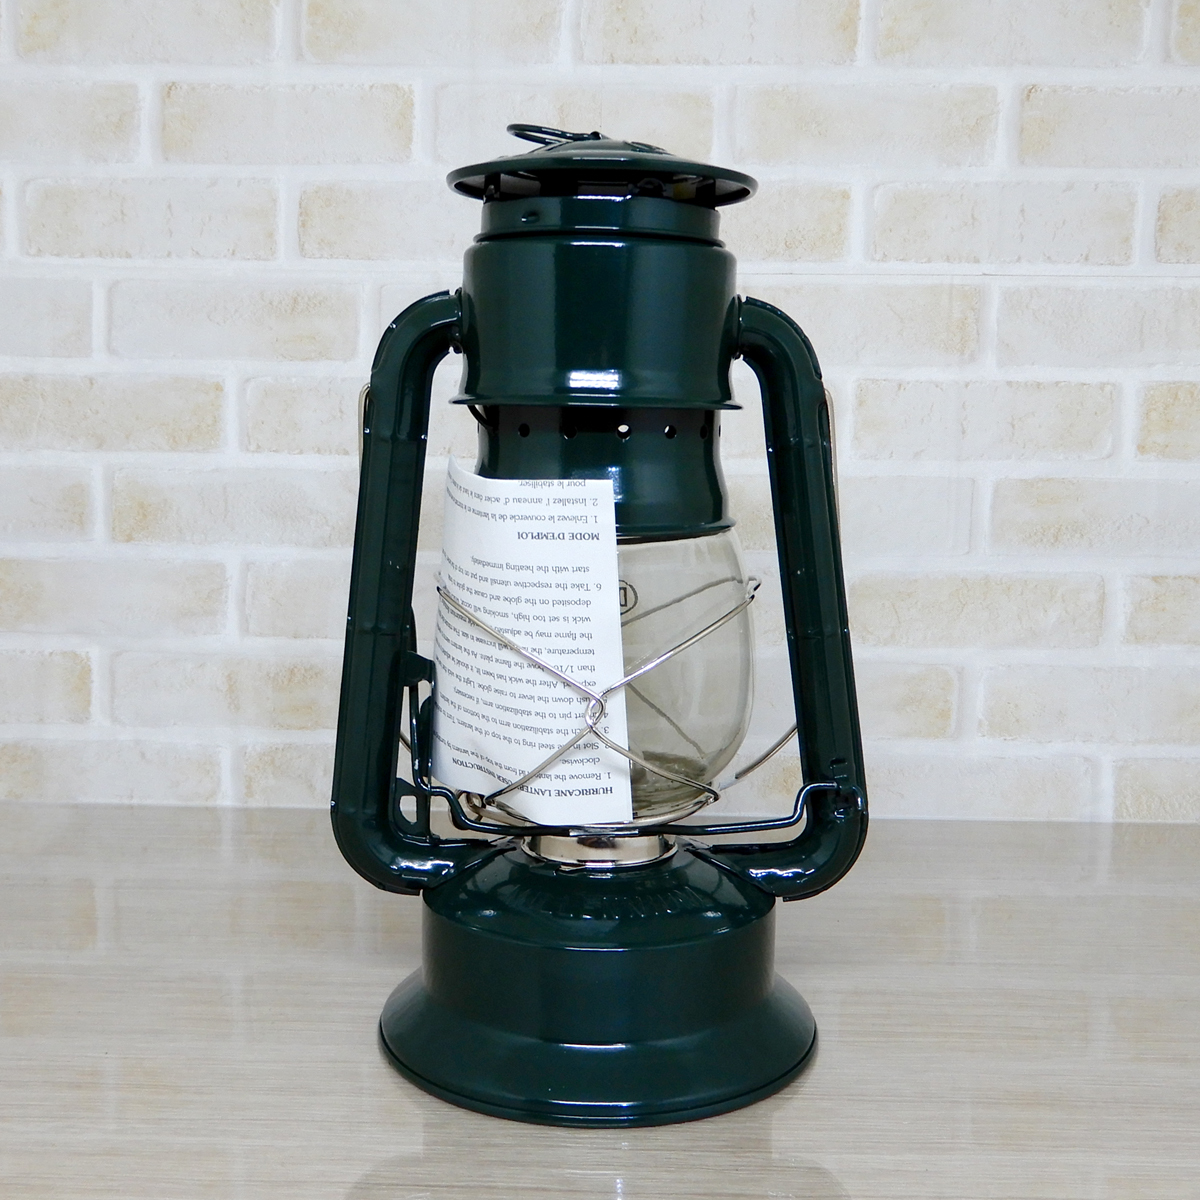 替芯2本付【送料無料】新品 Dietz #2000 Millennium Cooker Oil Lantern - Green ◇デイツ クッキング仕様 グリーン 緑 ハリケーンランタン